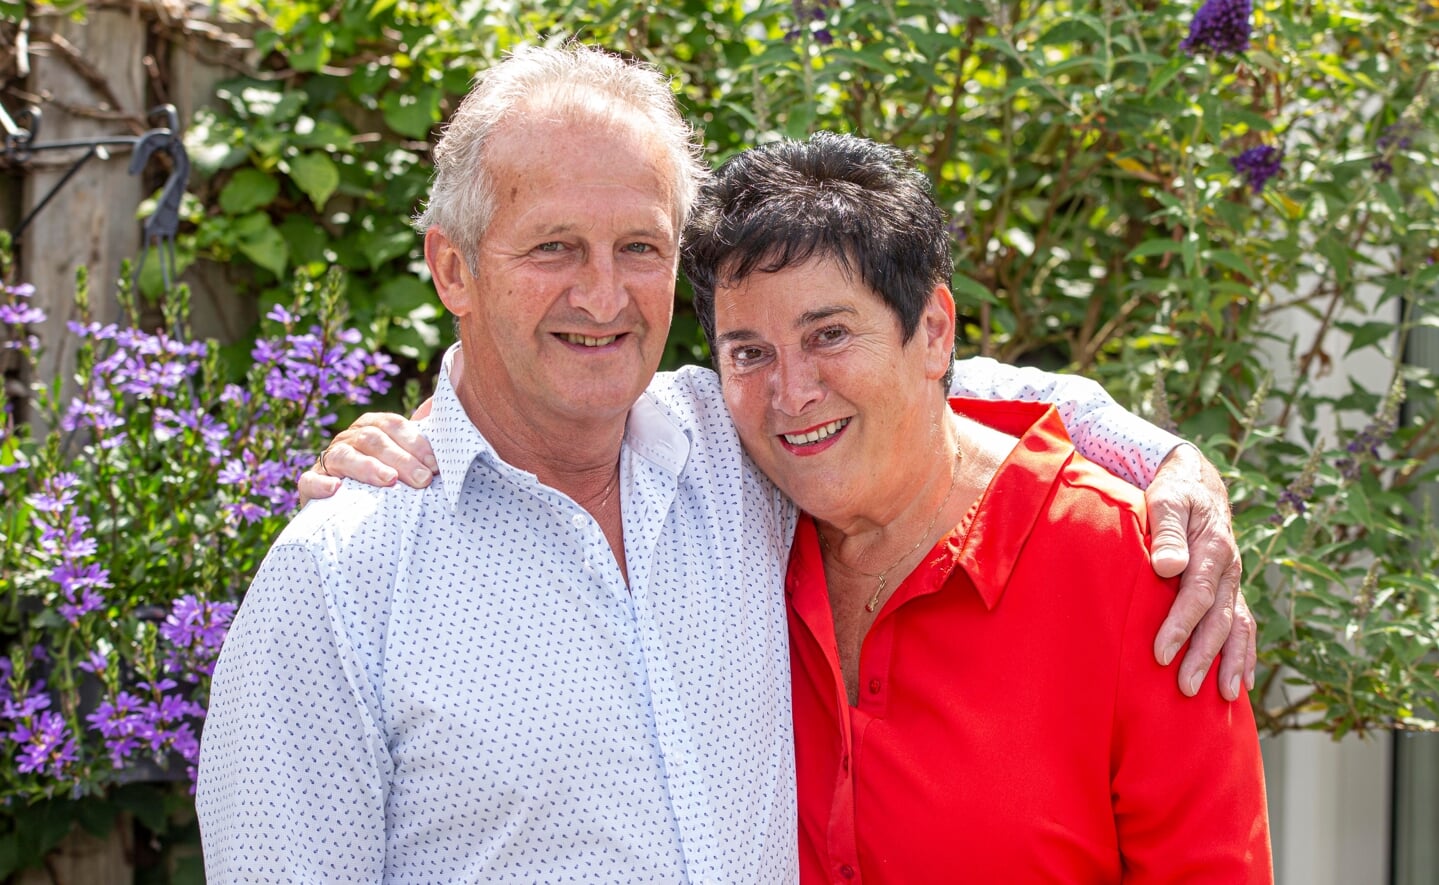 Harrie en Geertje Schellekens praten vol liefde over elkaar. Ze zijn woensdag 29 juni vijftig jaar getrouwd.